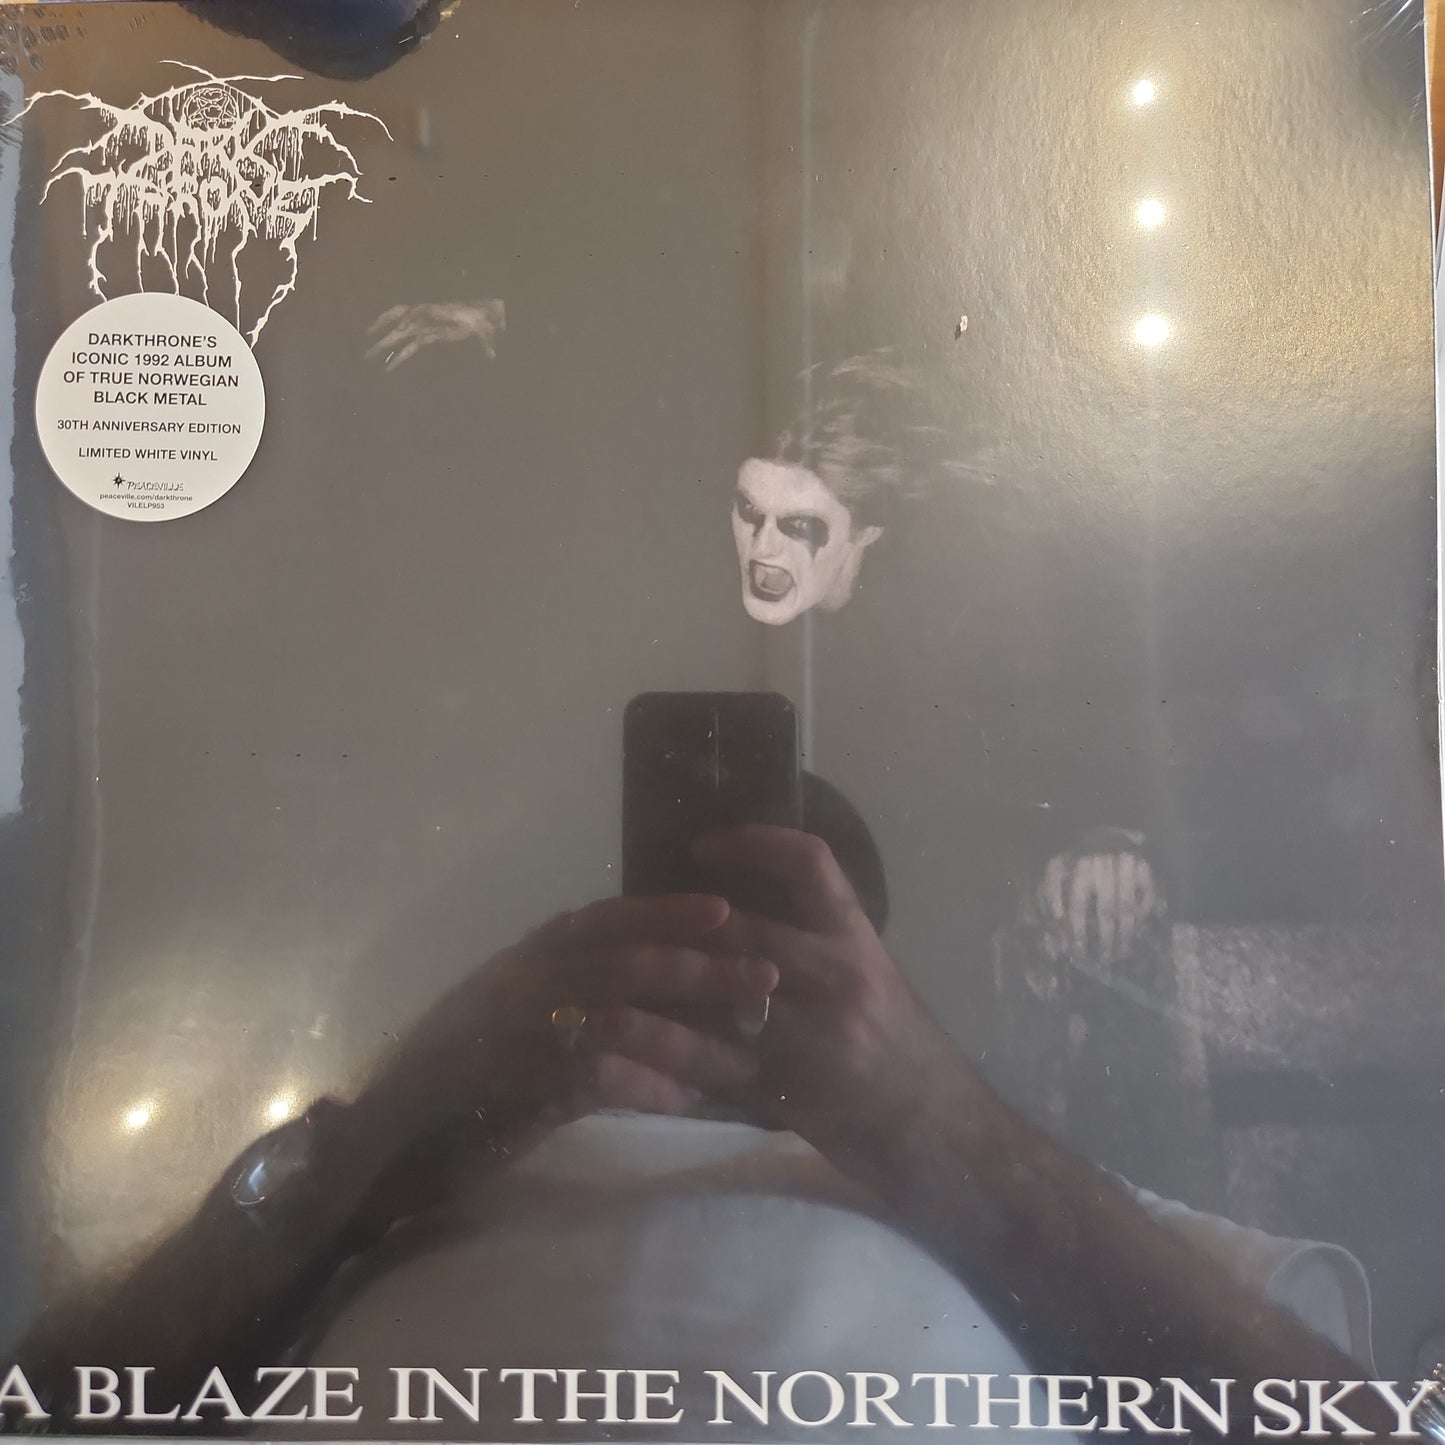 Darkthrone - A Blaze in the Northern Sky - Limited White Vinyl LP